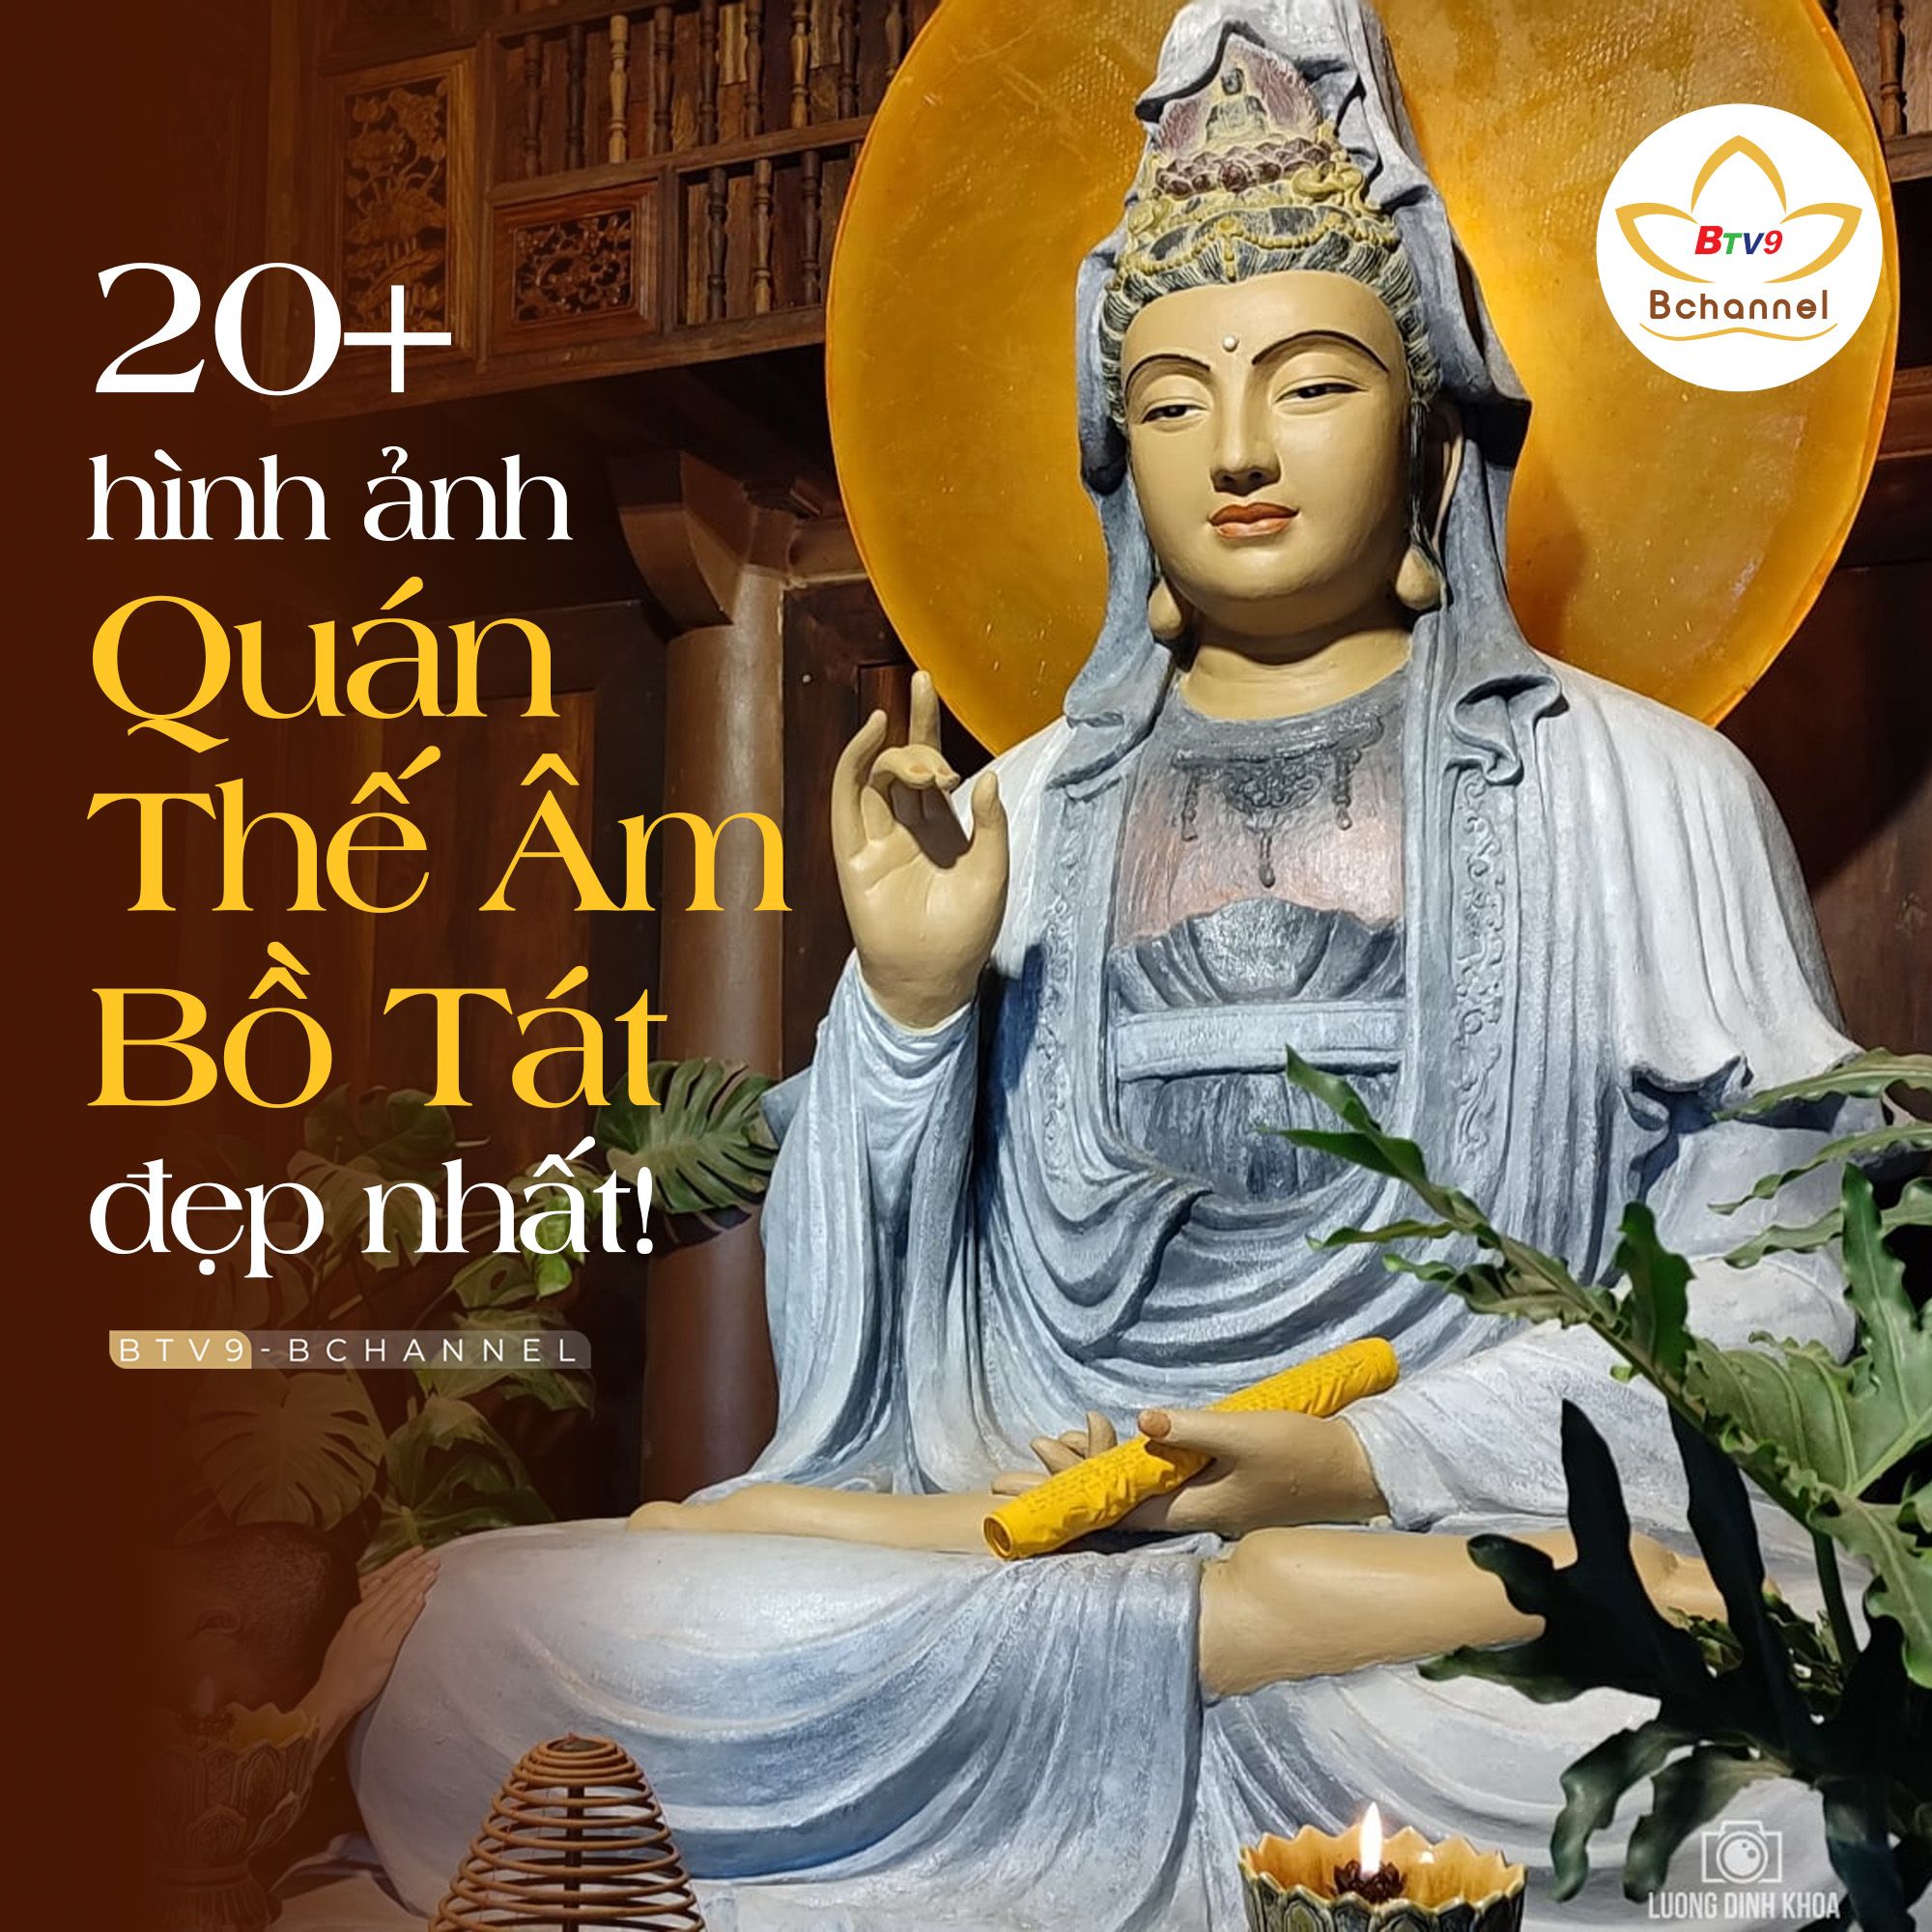 20 Hình Phật Quan Âm đẹp, ảnh Mẹ Quan Thế Âm Bồ Tát 3D chất lượng cao